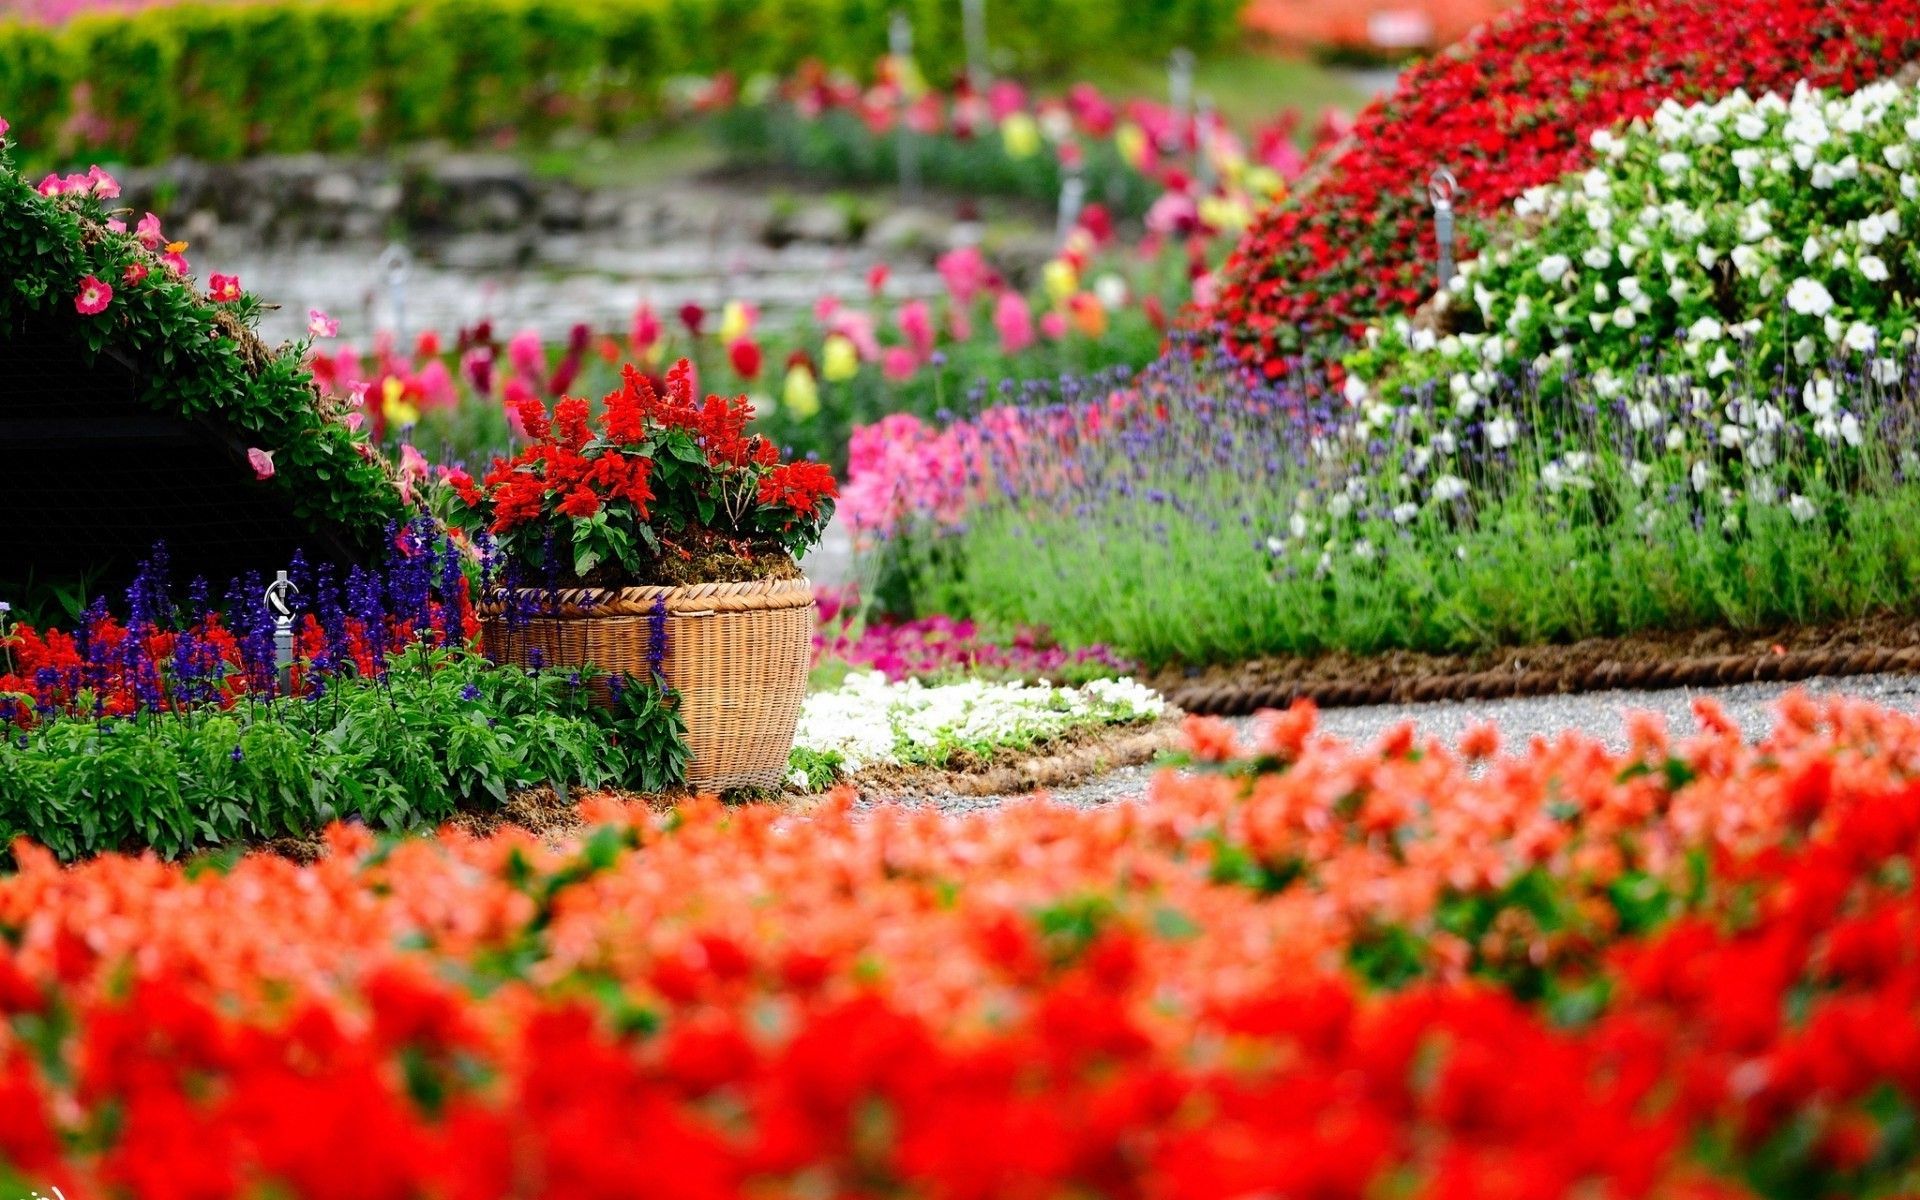 Fondos de pantalla de jardines con flores - FondosMil